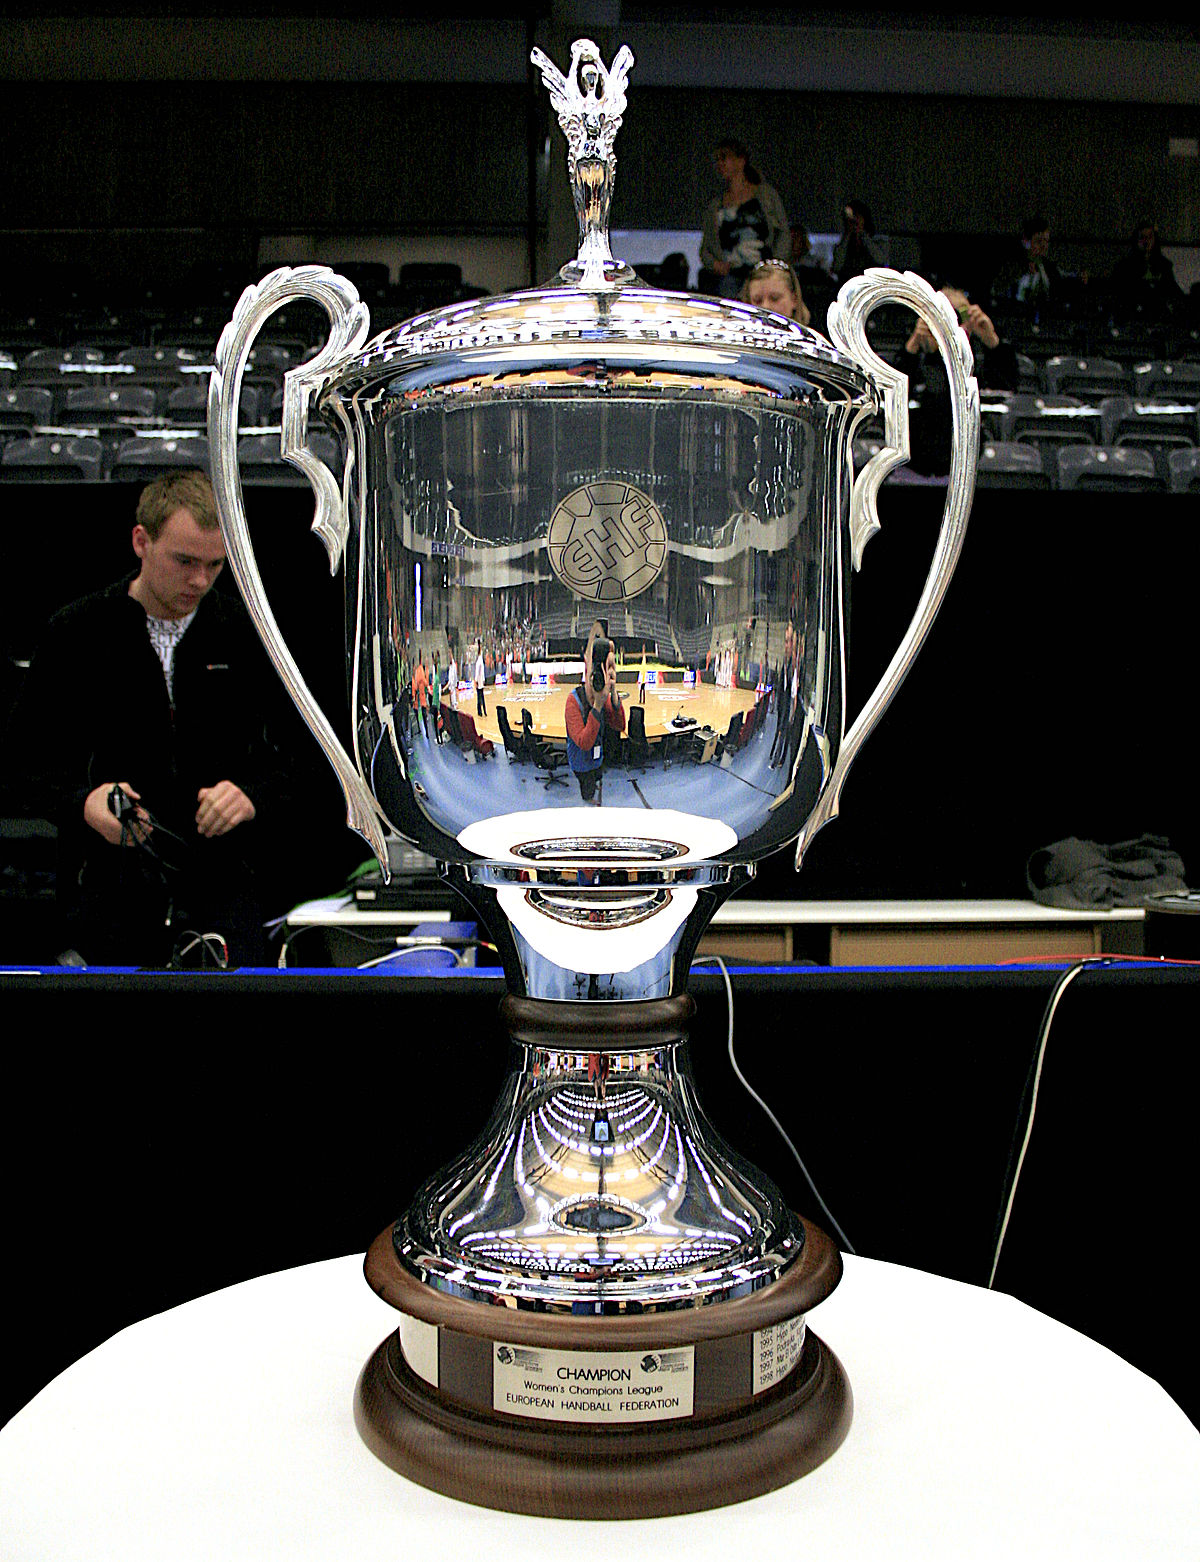 EHF Champions League (pallamano maschile) - Wikipedia